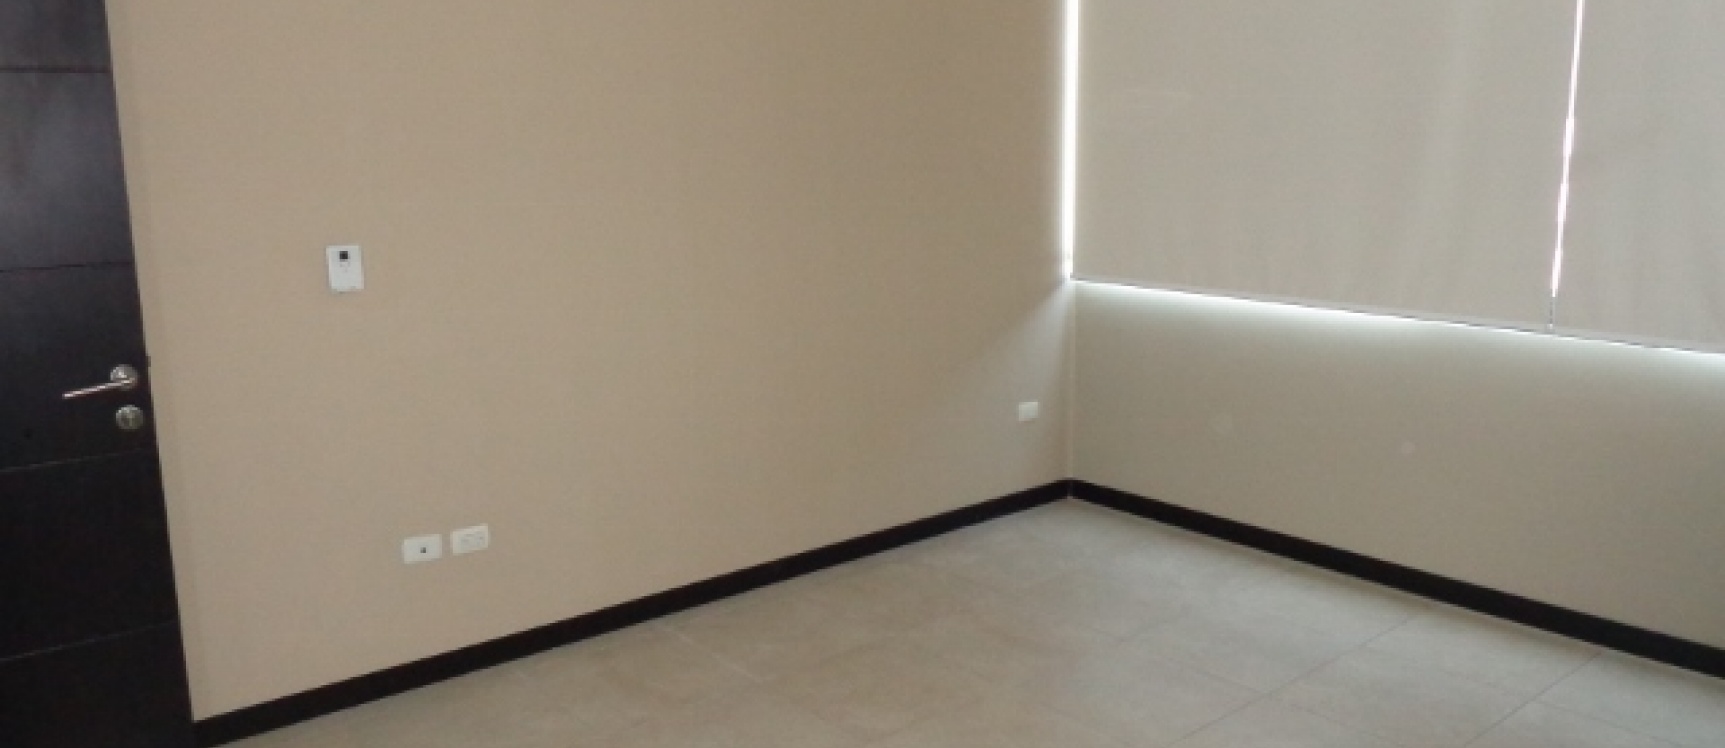 GeoBienes - Suite en Alquiler en Ciudad del Rio Bellini, Guayaquil. - Plusvalia Guayaquil Casas de venta y alquiler Inmobiliaria Ecuador